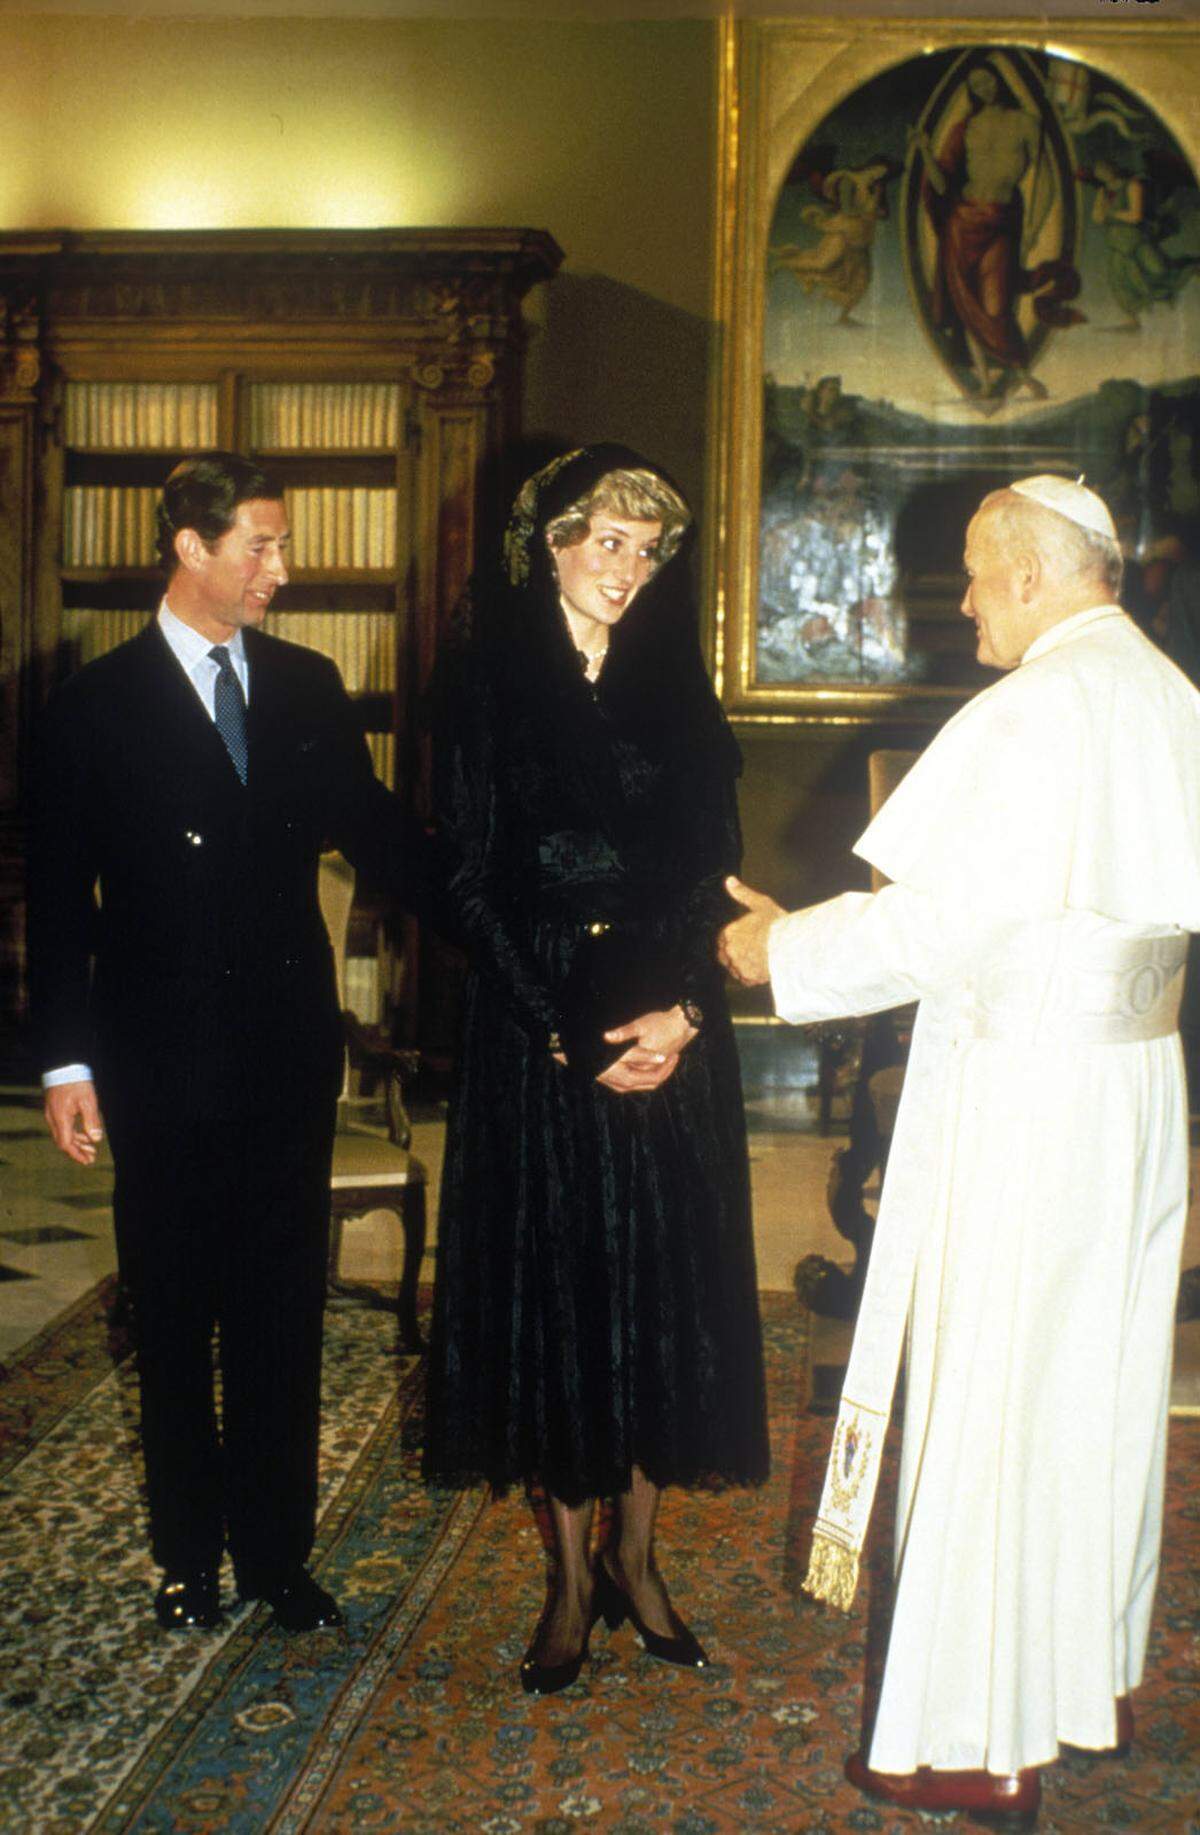 Denn schon vor ihnen kamen berühmte Frauen in ähnlicher Tracht zum Katholiken-Oberhaupt: So zum Beispiel Prinzessin Diana, als sie 1985 den damaligen Papst Johannes Paul II. mit ihrem Mann Prinz Charles besuchte.